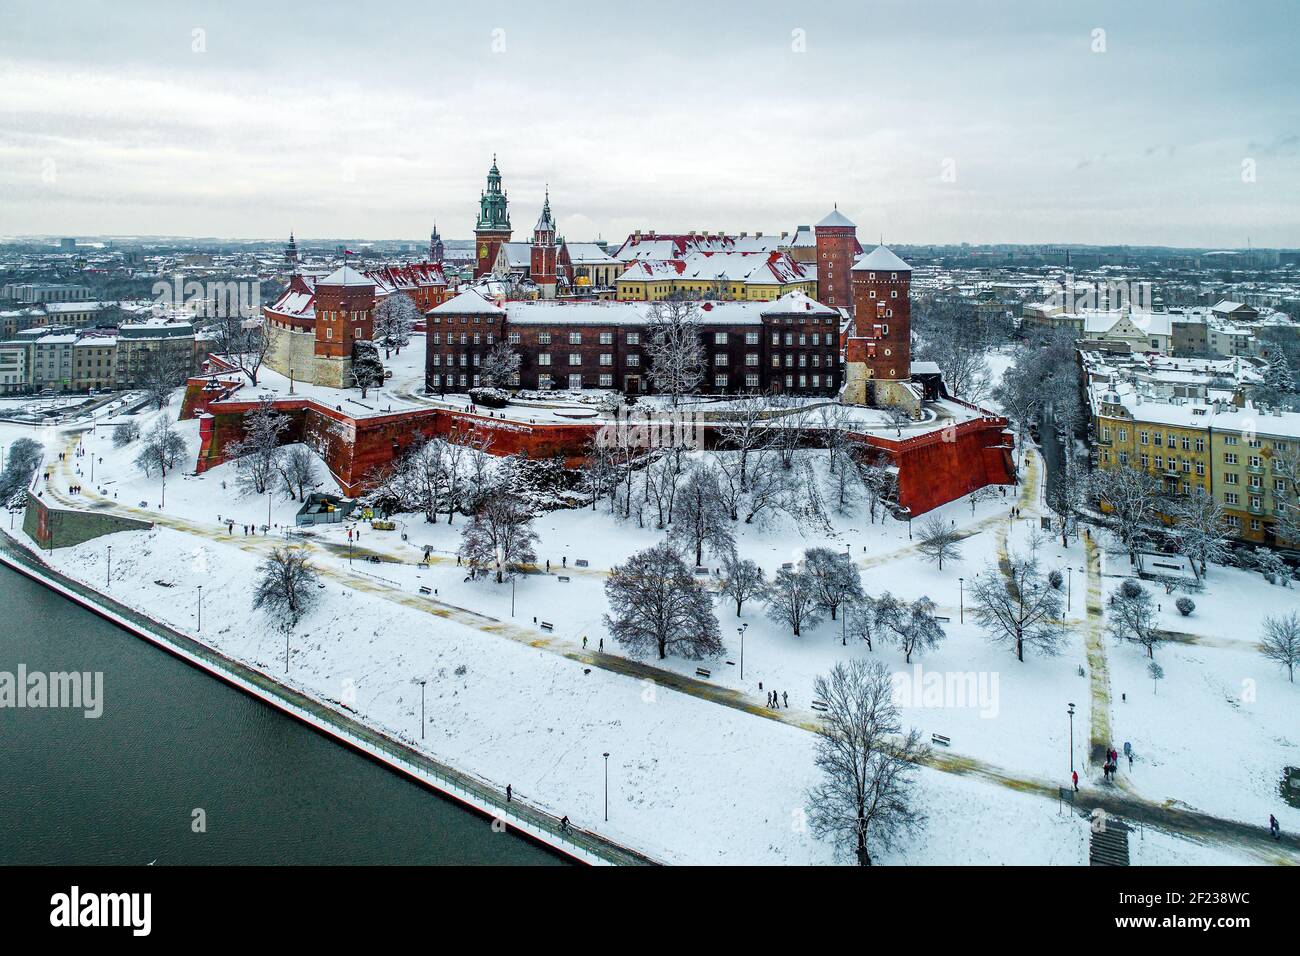 Historisches königliches Wawel Schloss und Kathedrale in Krakau, Polen, mit Weichsel, Spaziergänger, Schnee und Promenade im Winter Stockfoto